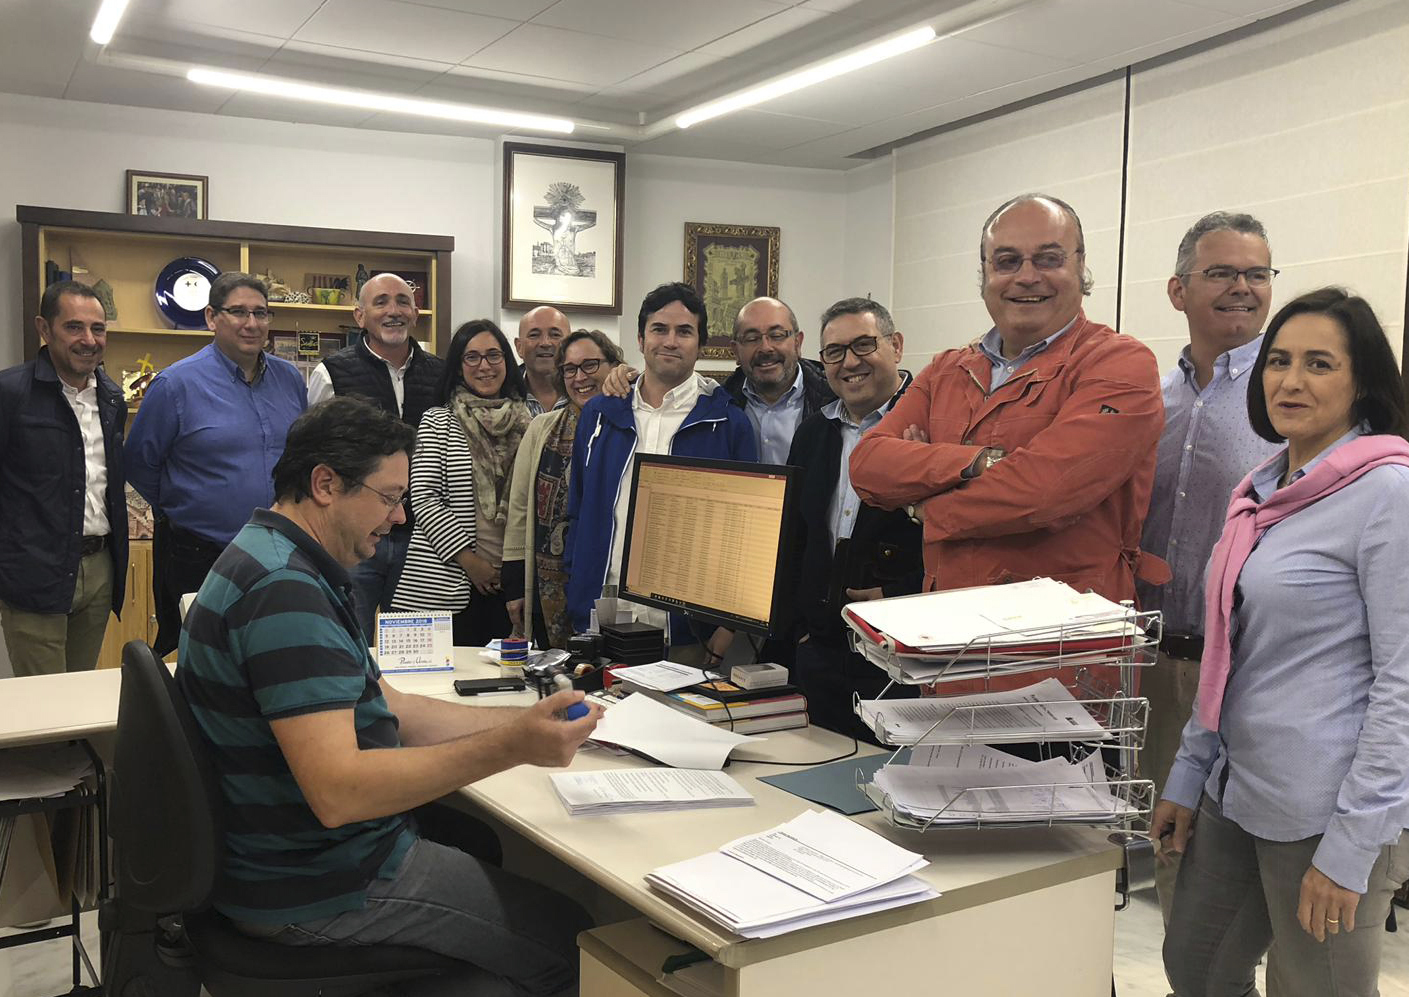 Javier Reig oficialitza la seua candidatura a la presidència de Festers El Periòdic d'Ontinyent - Noticies a Ontinyent